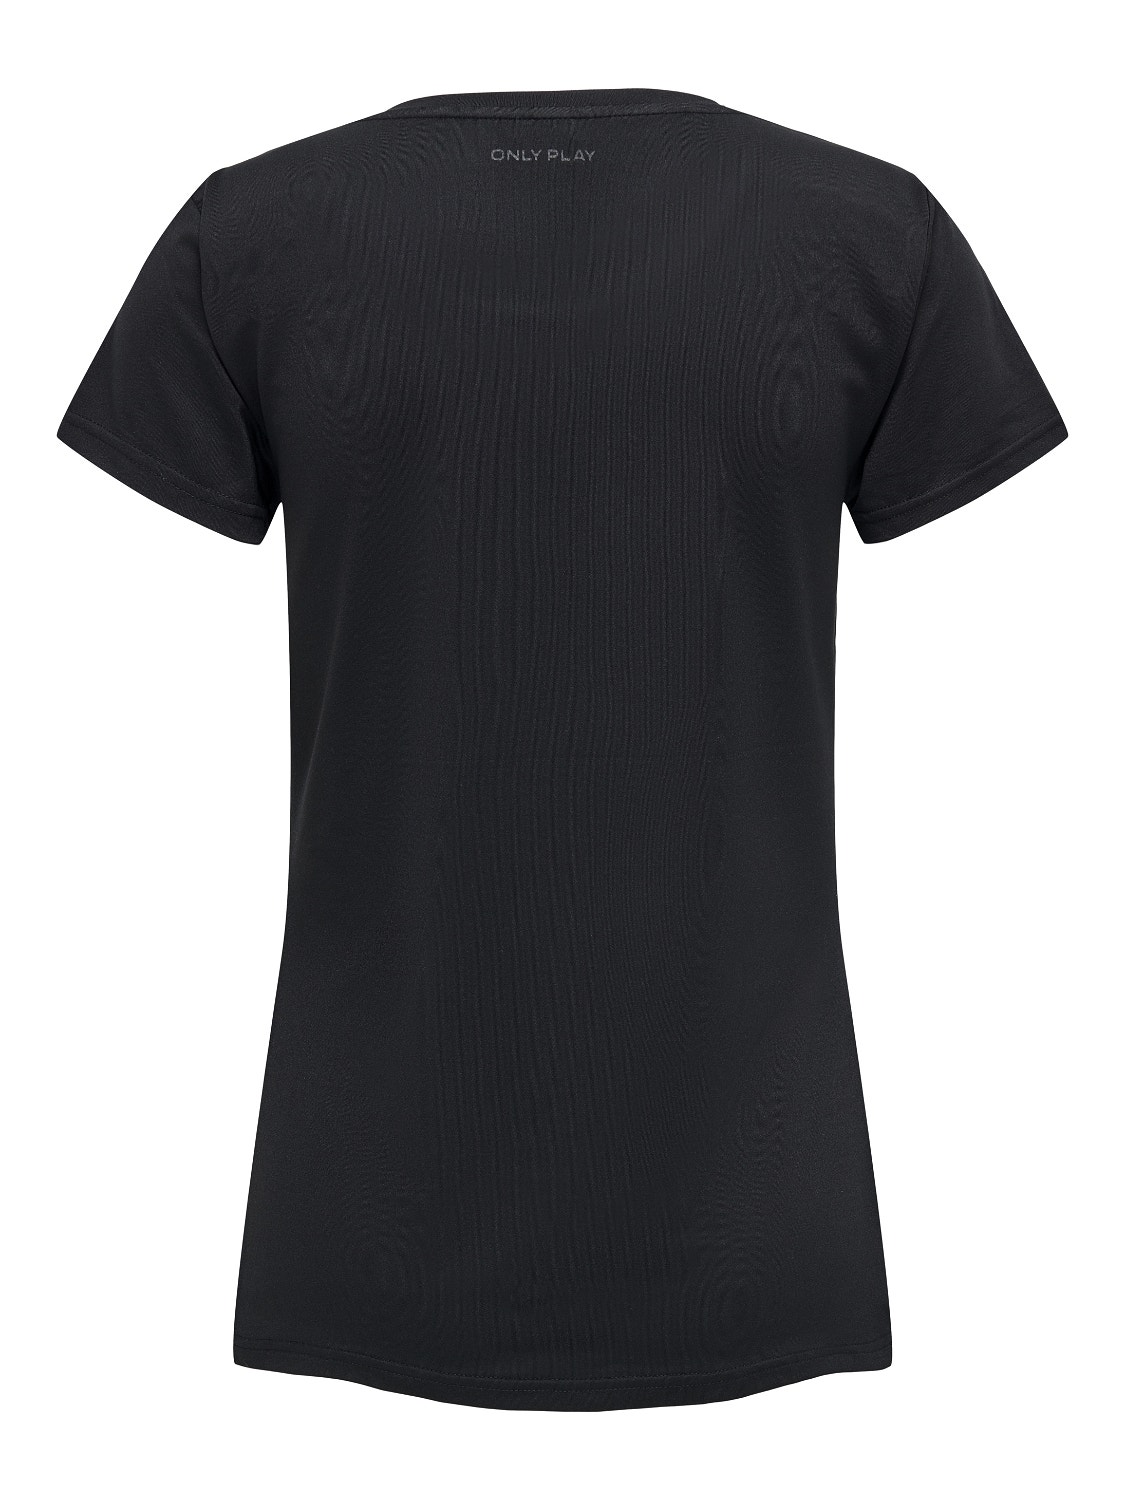 Indica maandelijks Stewart Island Effen Sport shirt | Zwart | ONLY®